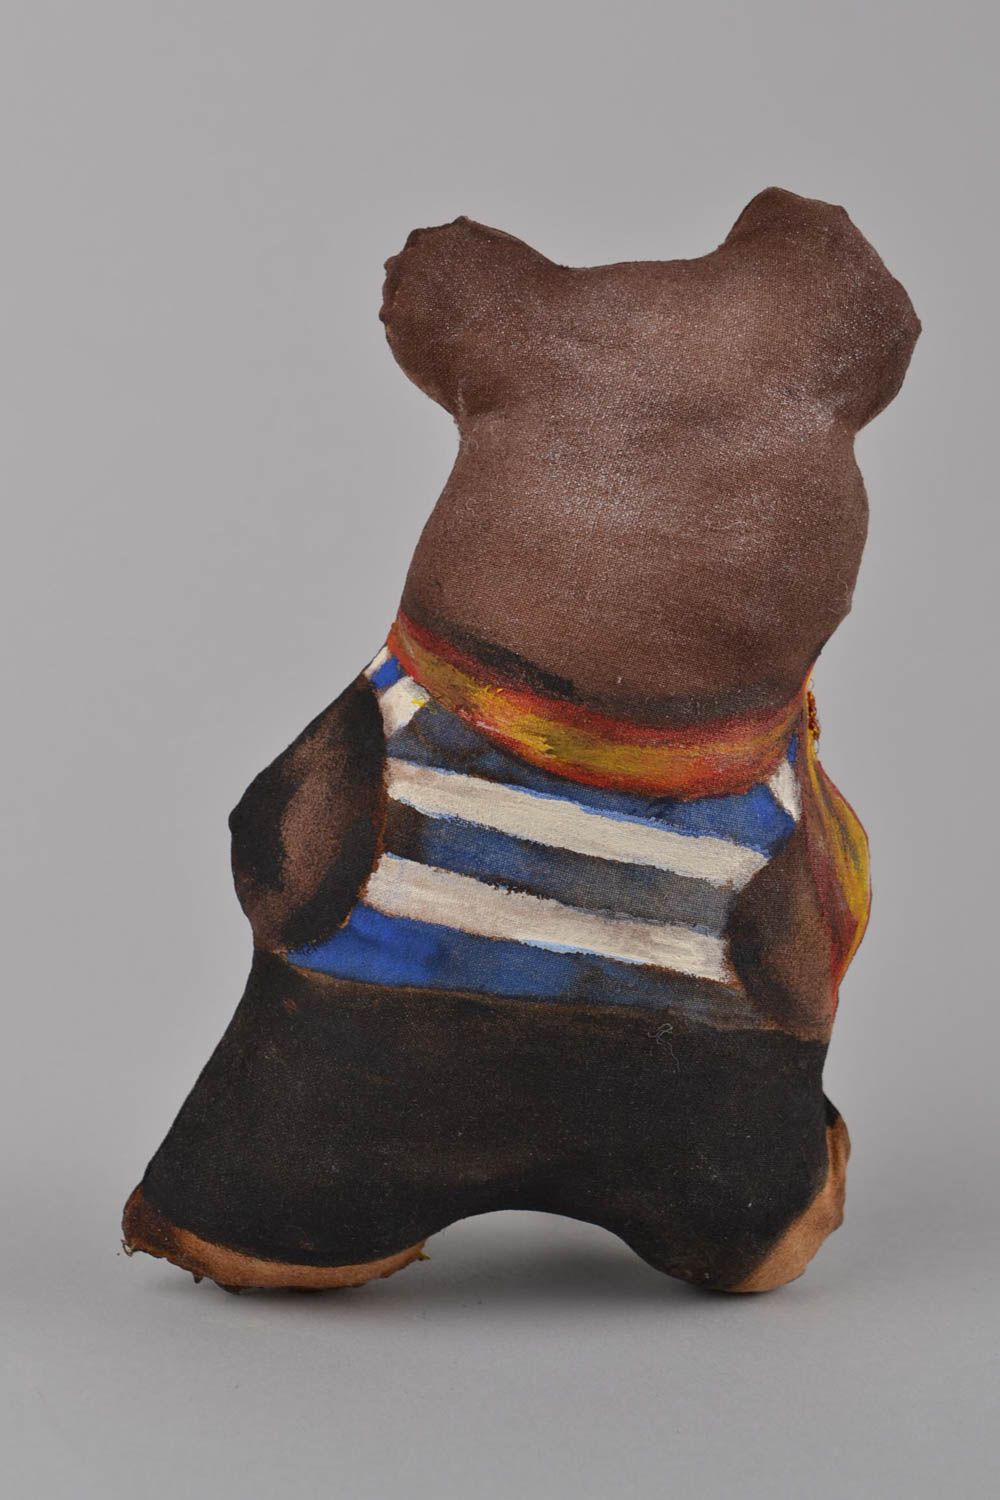 Расписная игрушка ручной работы с ароматом из льна оригинальная Медвежонок фото 5